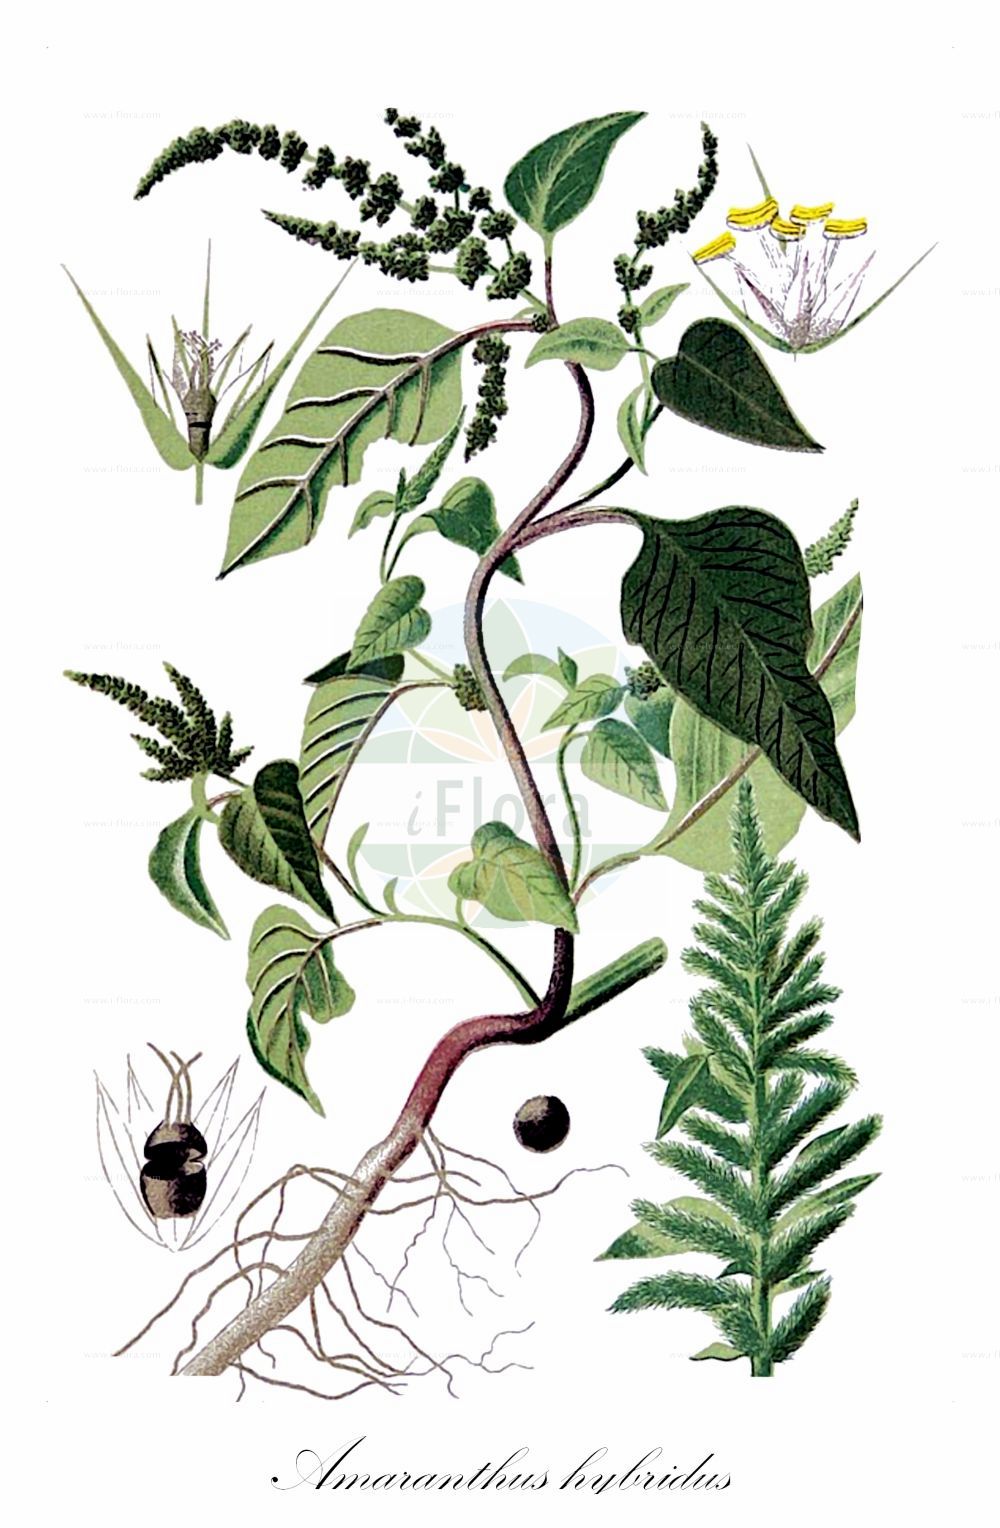 Historische Abbildung von Amaranthus hybridus agg. (Grünähriger Fuchsschwanz - Green Amaranth). Das Bild zeigt Blatt, Bluete, Frucht und Same. ---- Historical Drawing of Amaranthus hybridus agg. (Grünähriger Fuchsschwanz - Green Amaranth). The image is showing leaf, flower, fruit and seed.(Amaranthus hybridus agg.,Grünähriger Fuchsschwanz,Green Amaranth,Amaranthus hybridus agg.,Gruenaehriger Fuchsschwanz,Gruenaehriger Fuchsschwanz,Green Amaranth,Green Pigweed,Slim Amaranth,Smooth Pigweed,Spleen Amaranth,Wild Blite,Amaranthus,Fuchsschwanz,Pigweed,Amaranthaceae,Fuchsschwanzgewächse,Pigweed family,Blatt,Bluete,Frucht,Same,leaf,flower,fruit,seed,Bettfreund (1898-1901))